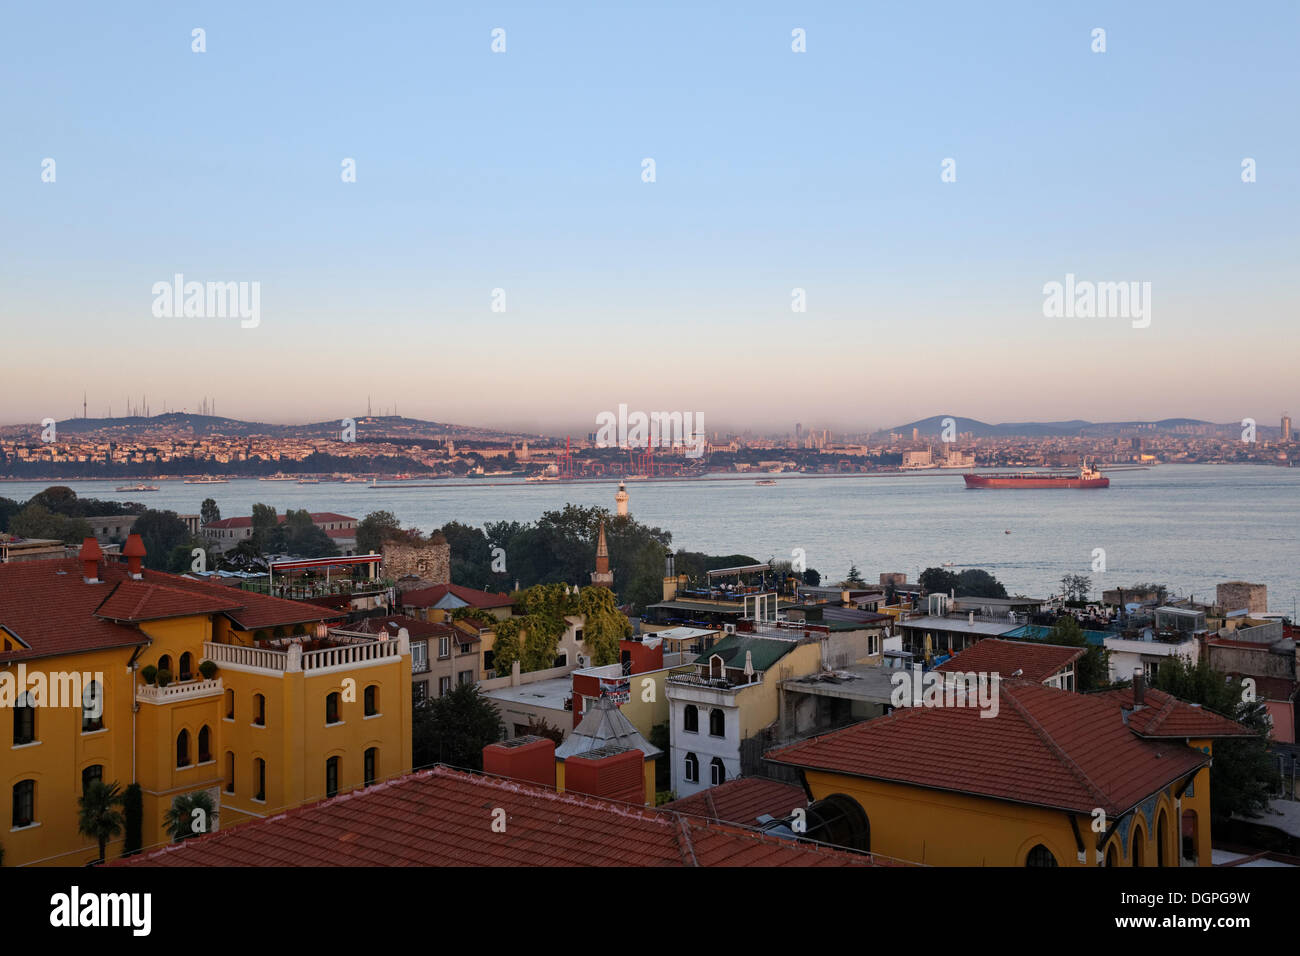 Blick vom alten Stadt Sultanahmet über Bosporus auf der asiatischen Seite mit Üsküdar und Kadiköy, Istanbul, Türkei, Europa Stockfoto